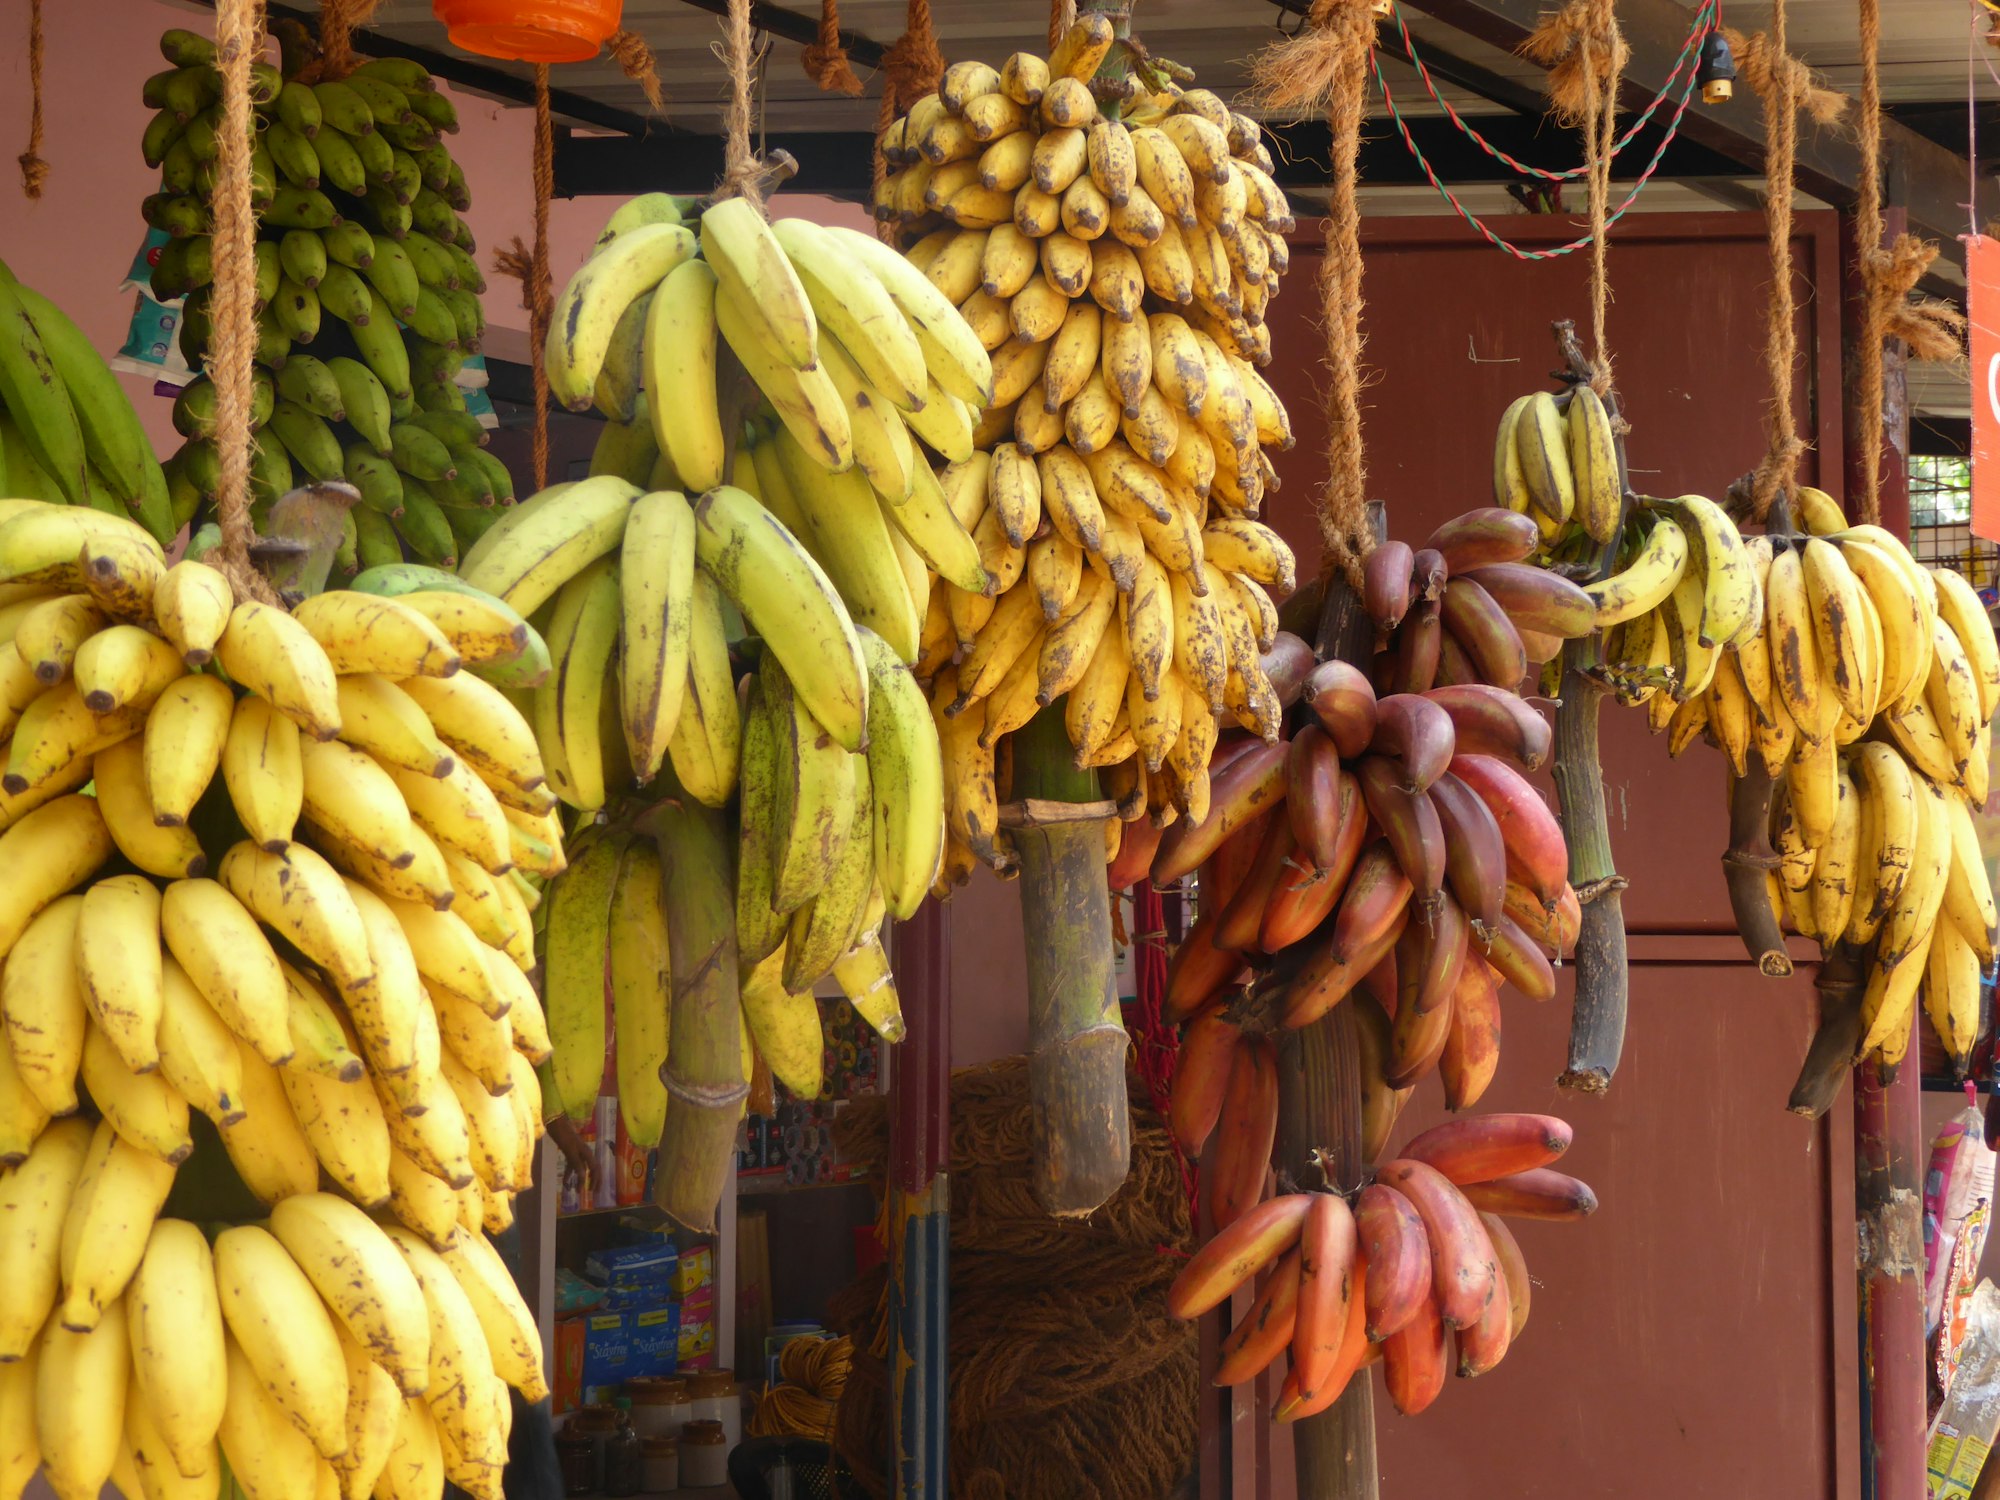  bananas fruit on display